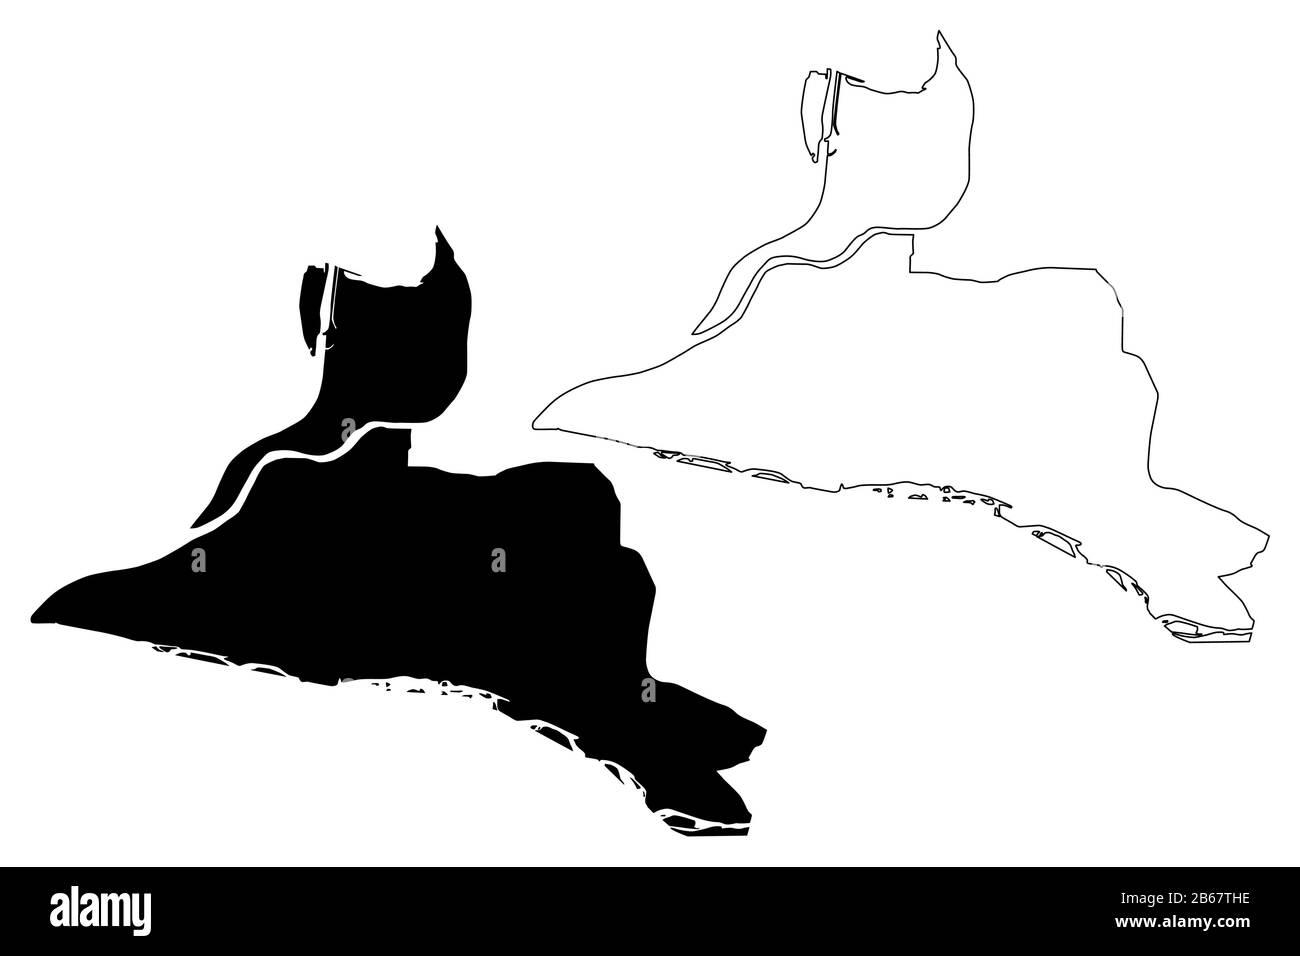 Avignon City (République française, France) illustration vectorielle de carte, esquisse de griffonnage carte de la ville d'Avignon Illustration de Vecteur